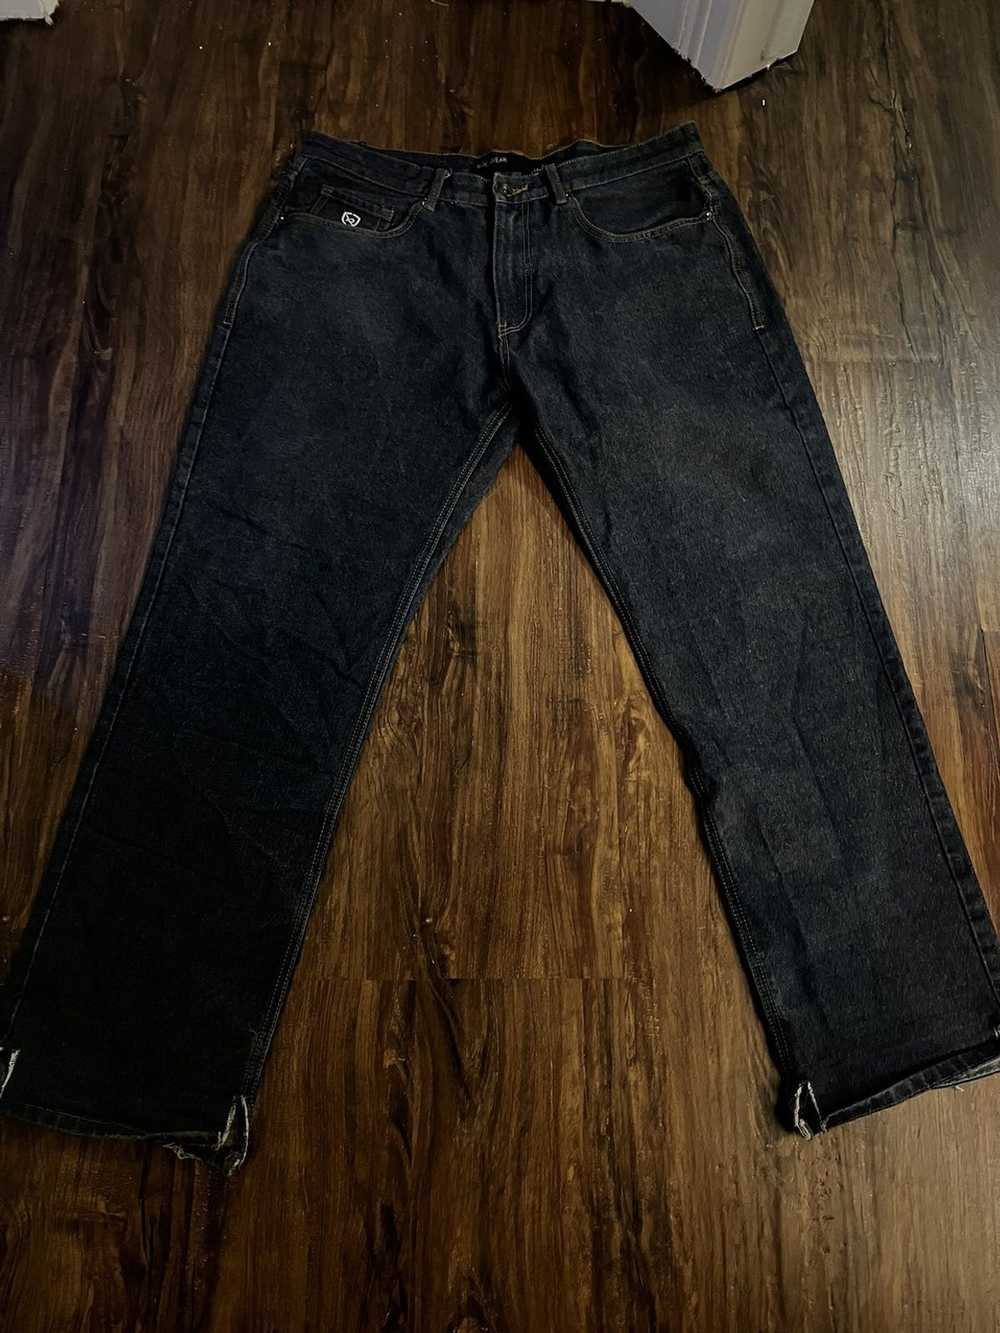 Rocawear Rockawear denim jeans - image 3